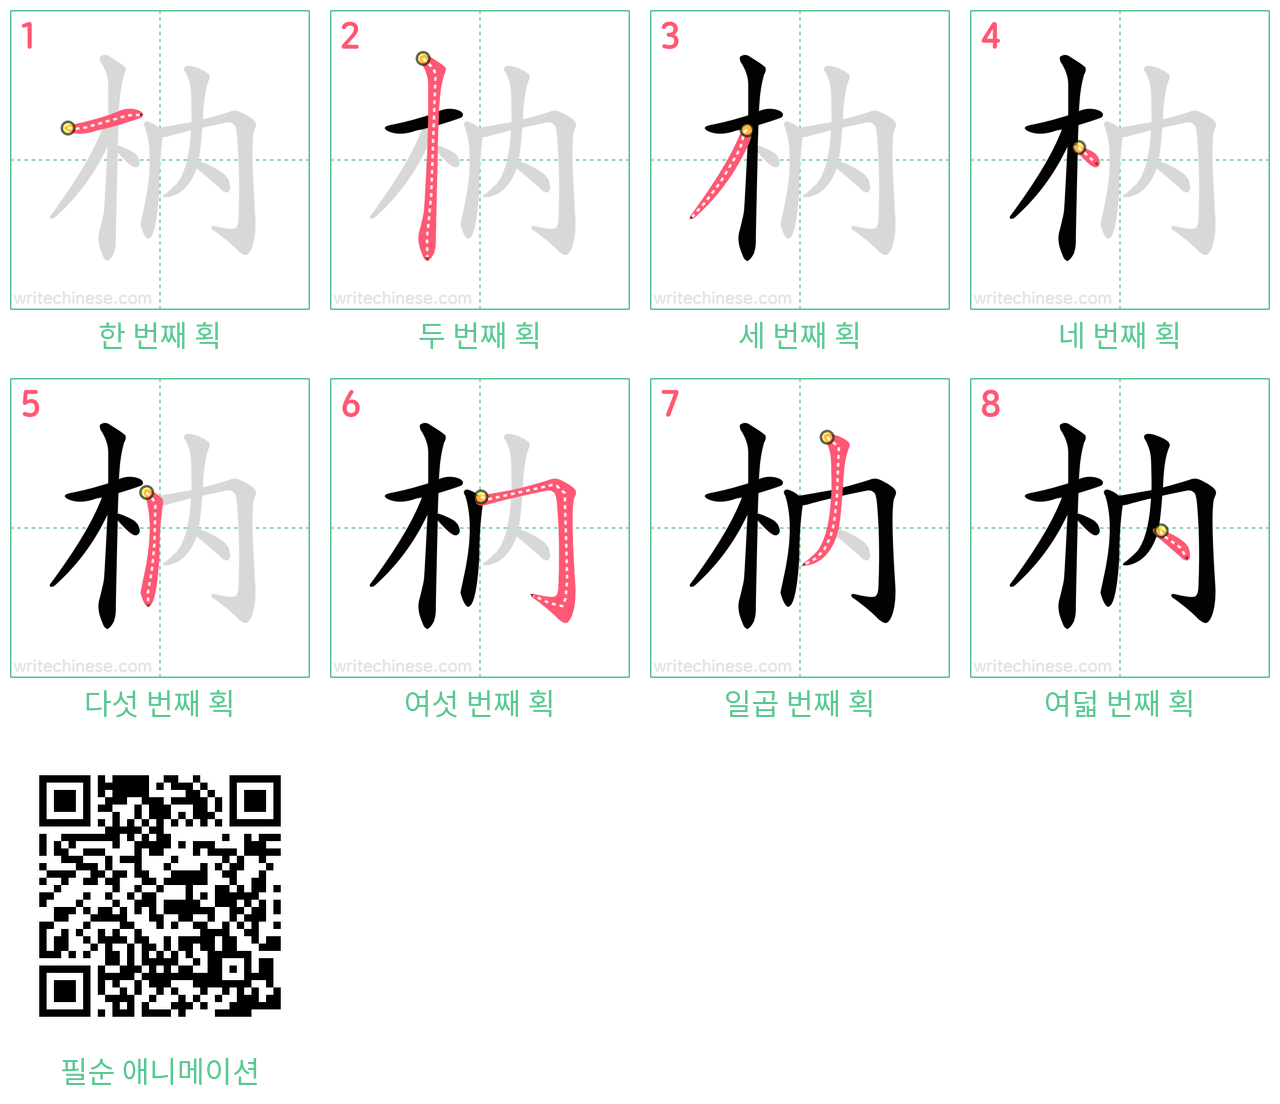 枘 step-by-step stroke order diagrams